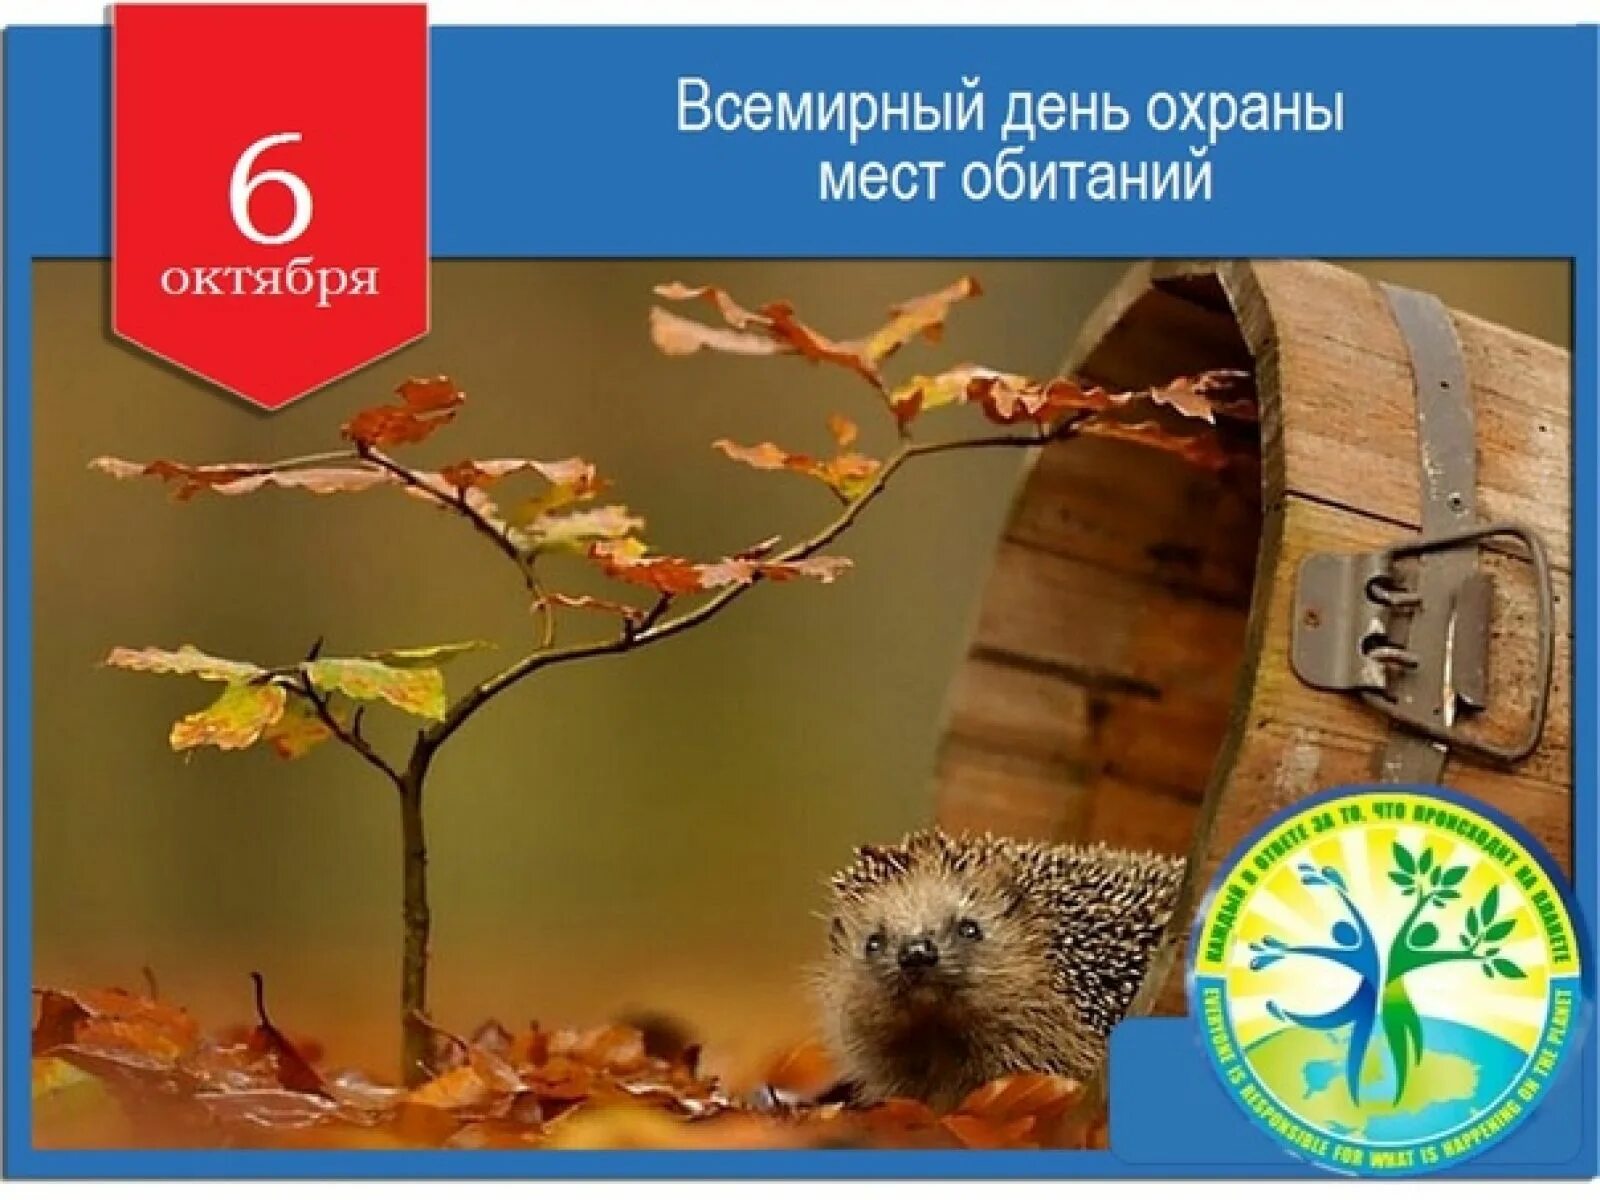 6 октября 2022 год. 6 Октября Всемирный день охраны мест обитания. День охраны мест обитания 6 октября. День охраны среды обитания. Всемирный день охраны среды обитания.